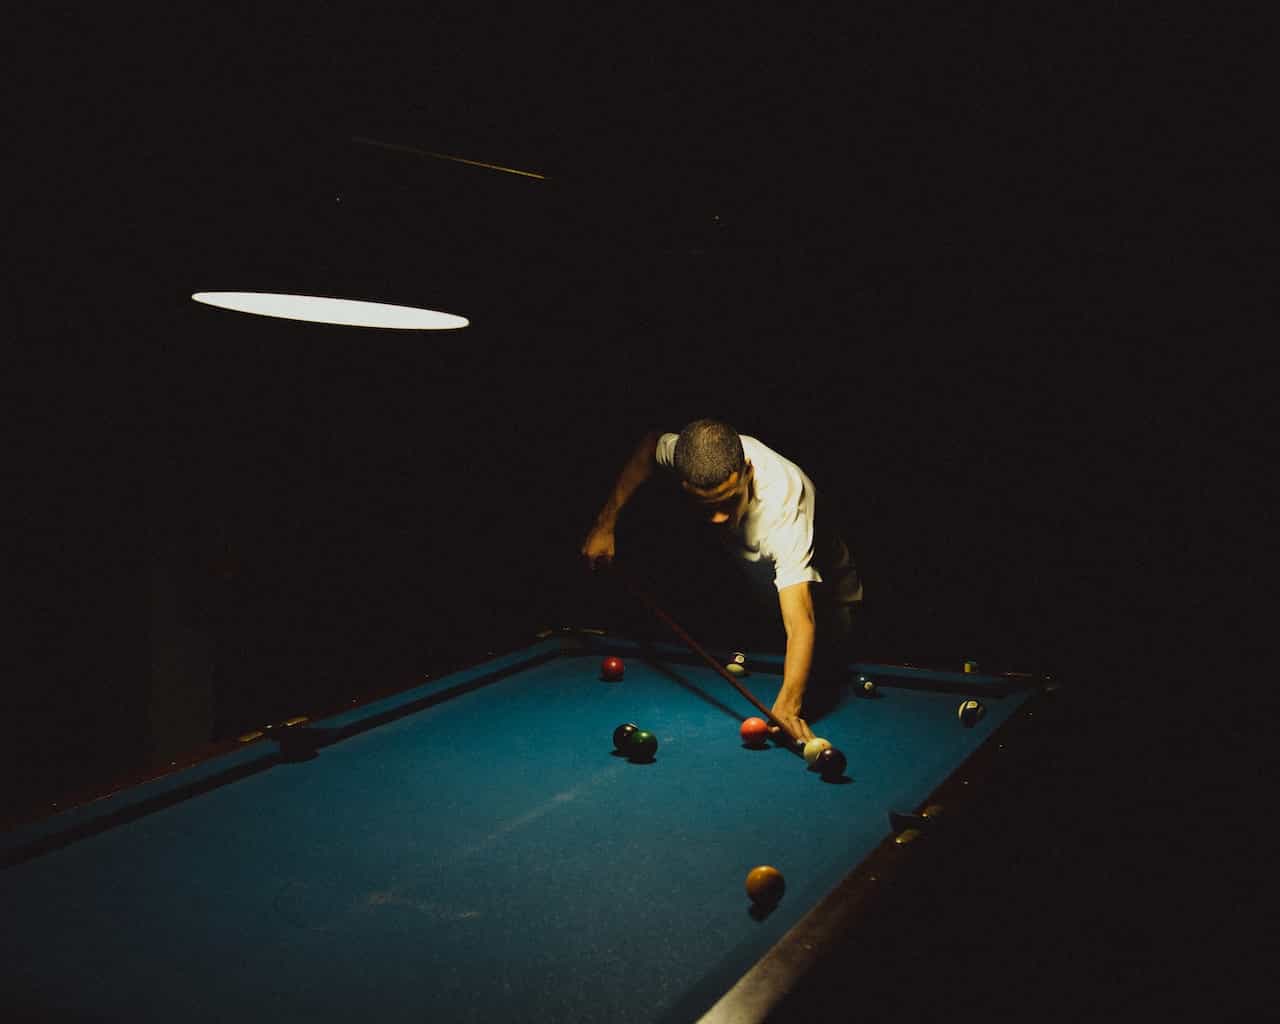 Seorang pria bermain snooker di ruangan gelap.